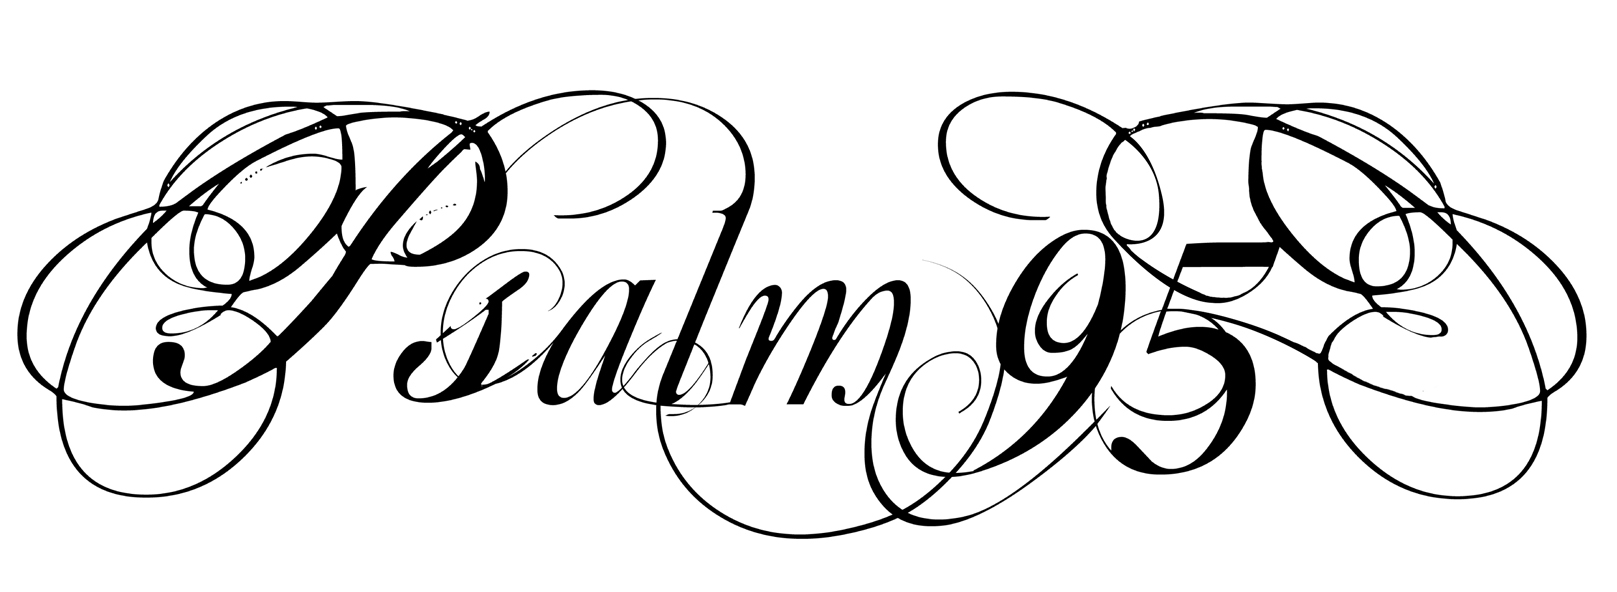 Psalm 95 tattoo script by